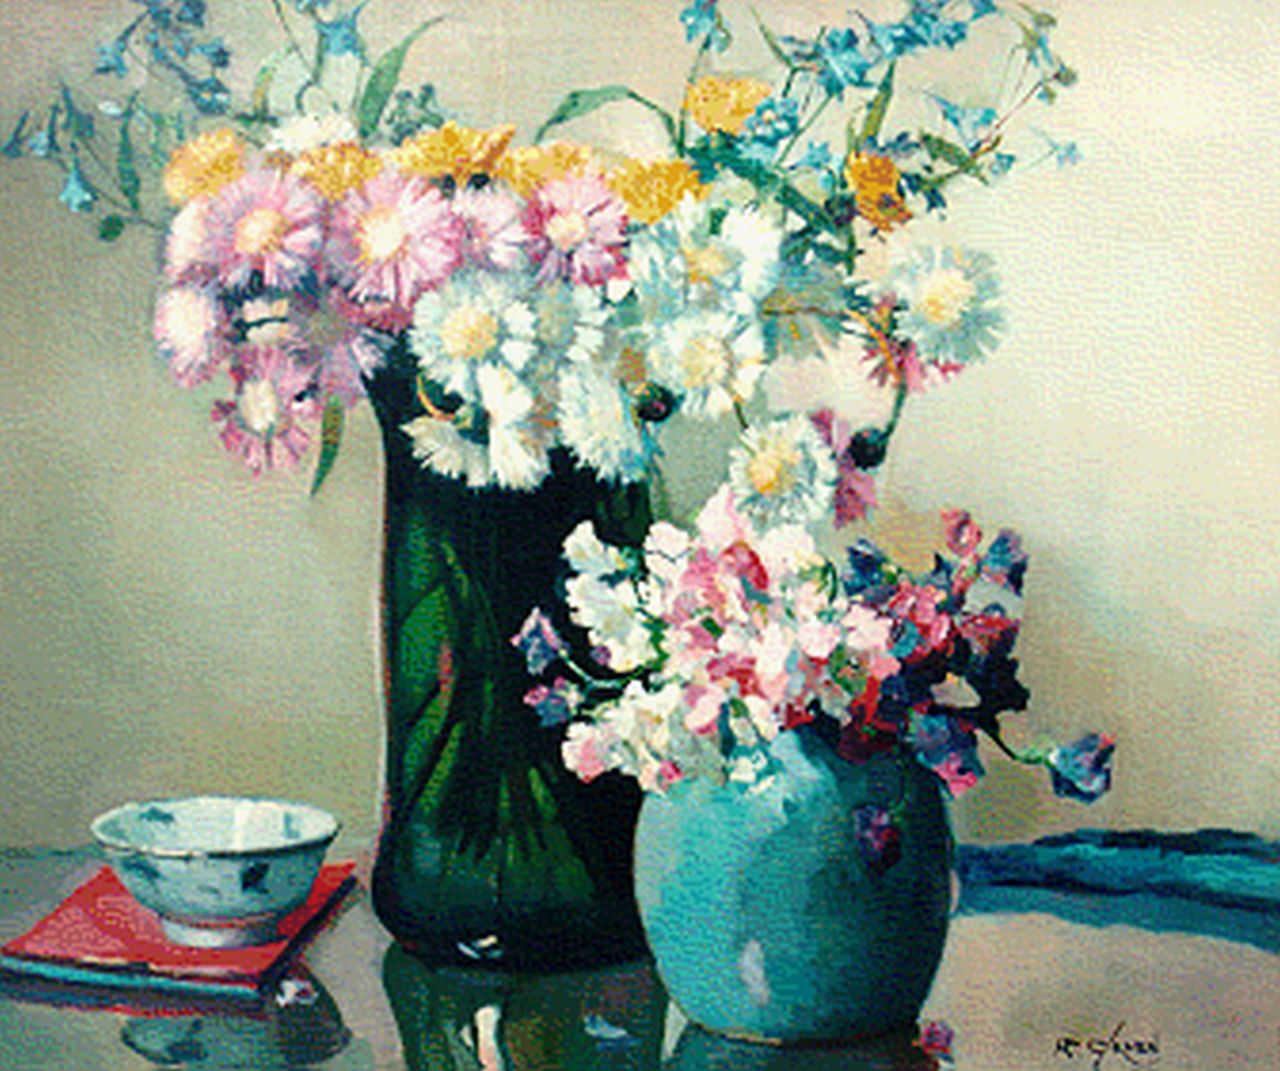 Groen H.P.  | Hendrik Pieter 'Piet' Groen, Twee vazen met bloemen, olieverf op doek 51,5 x 72,0 cm, gesigneerd rechtsonder